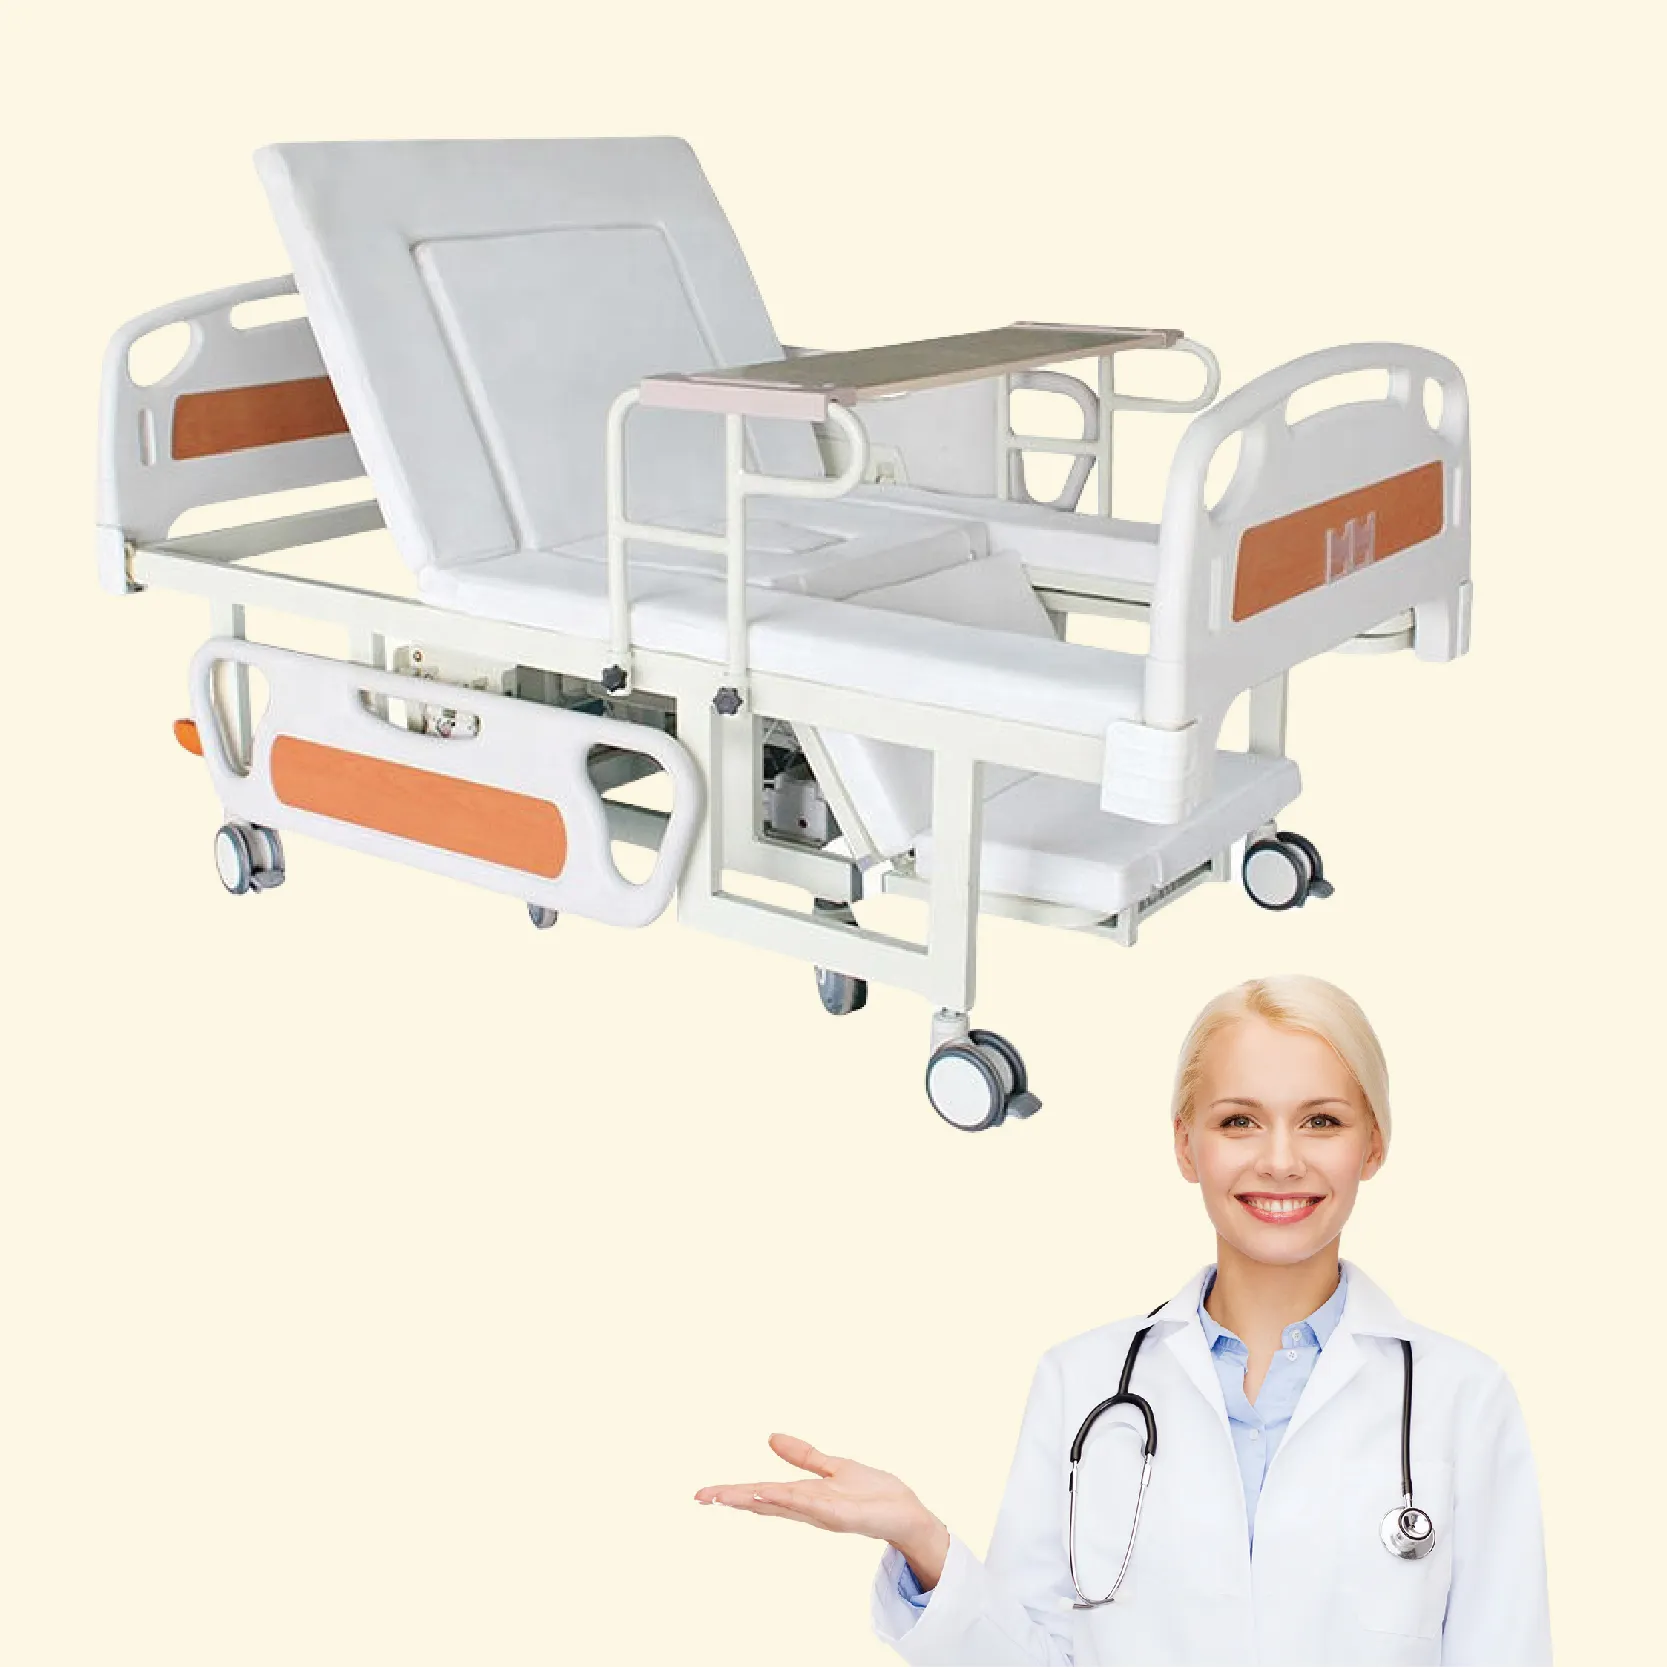 Sofá dobrável médico para exame de pacientes hospitalares, sofá para exame ginecológico, com altura ajustável